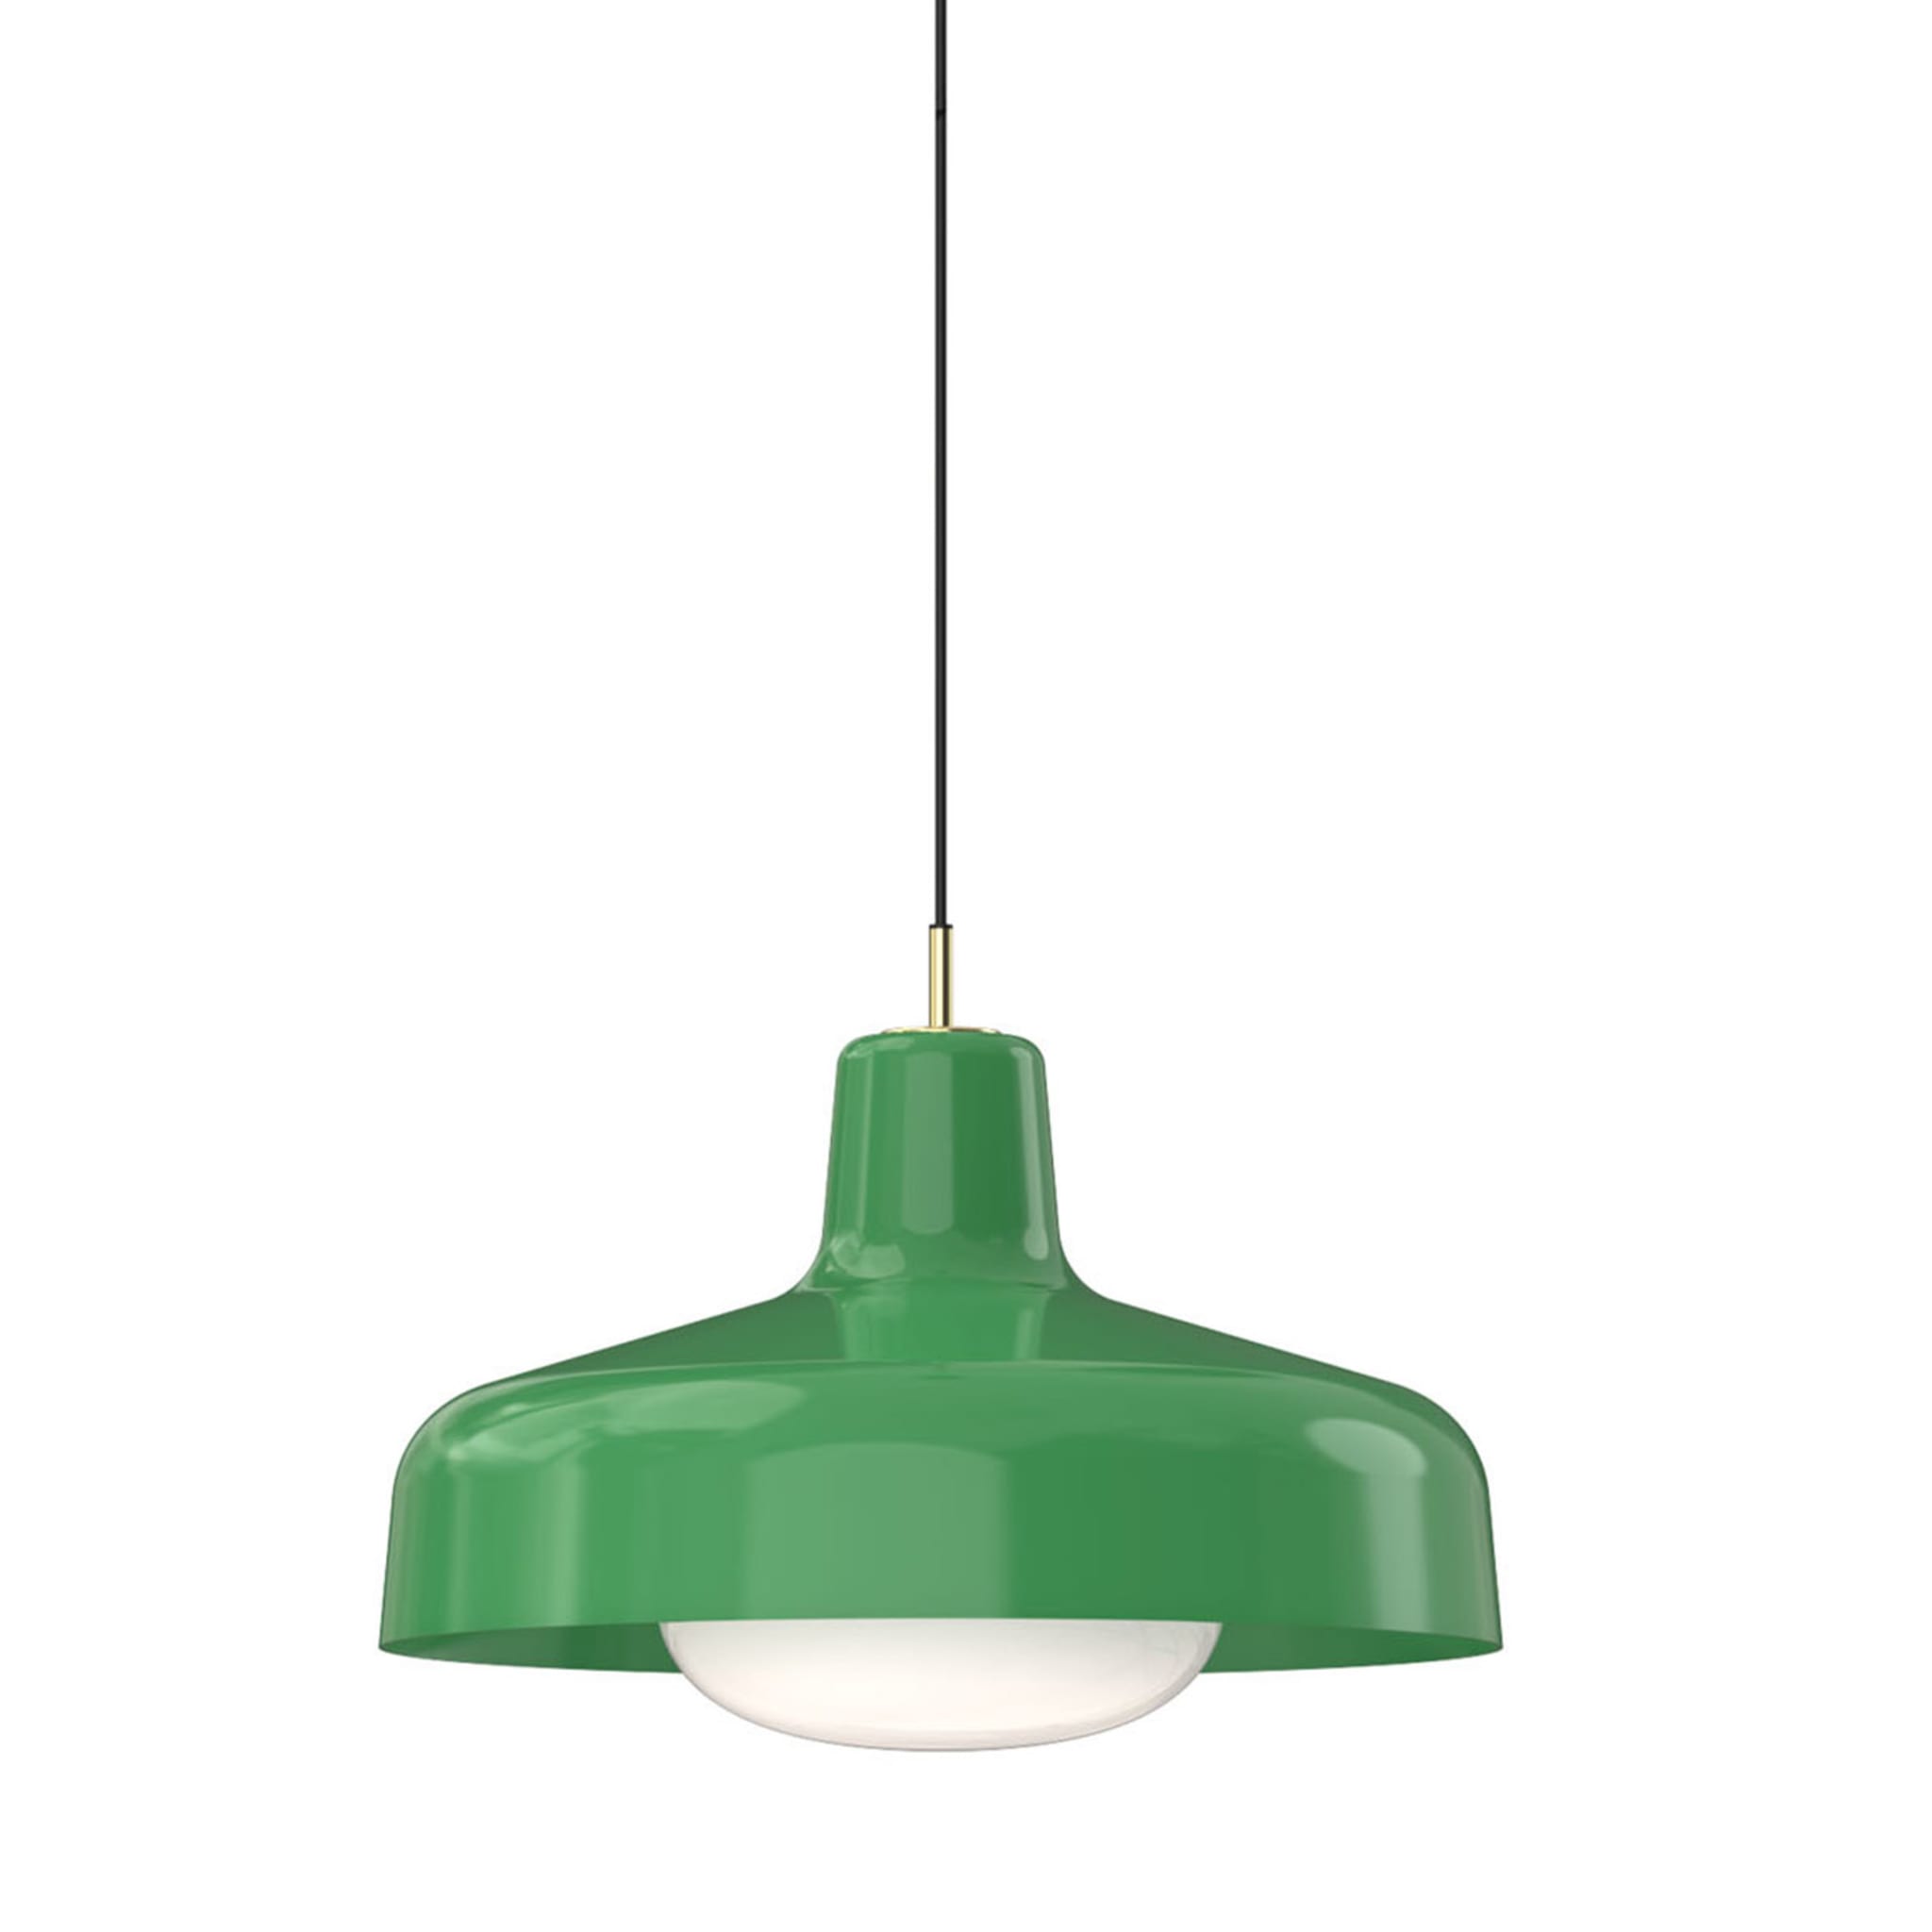 Paolina Green Pendant Lamp by Ignazio Gardella - Main view